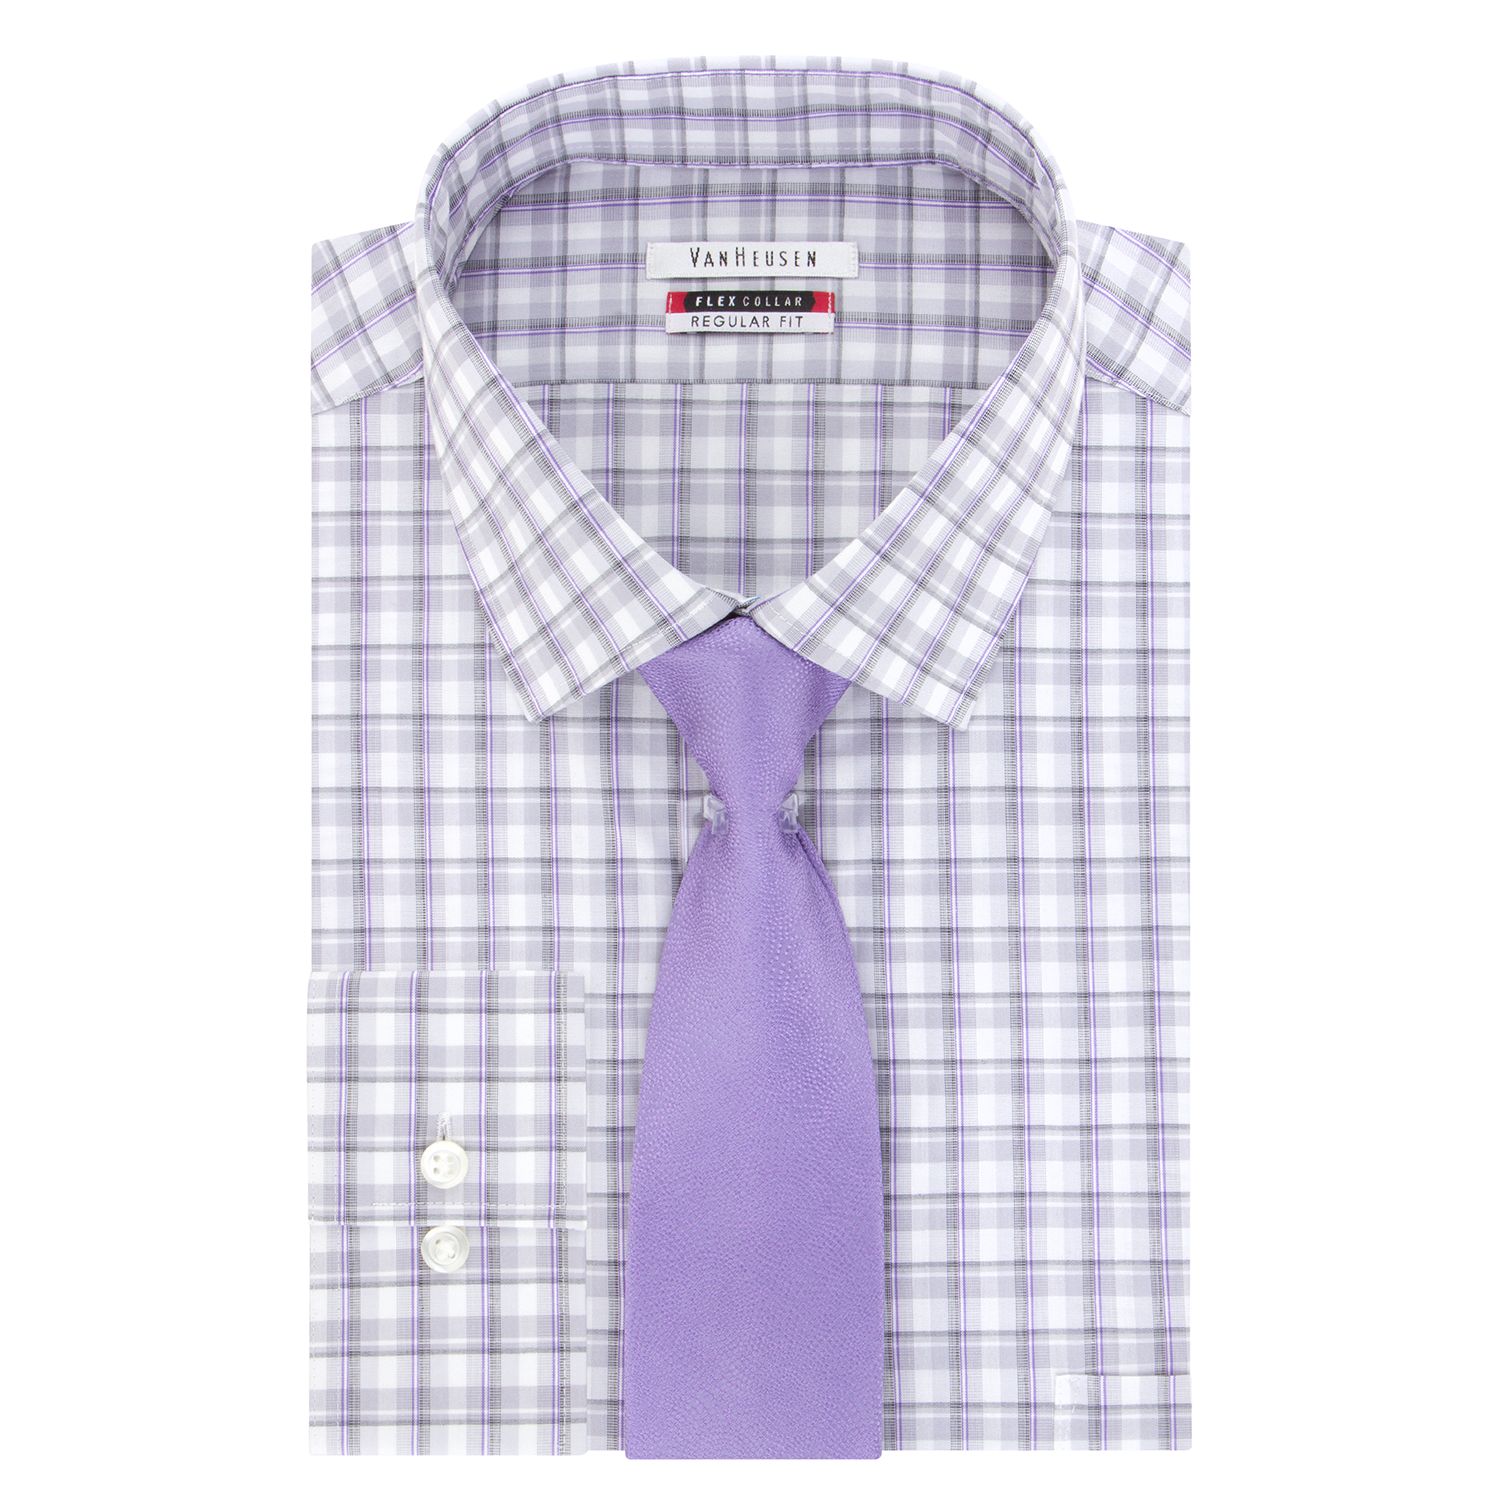 van heusen shirt and tie set